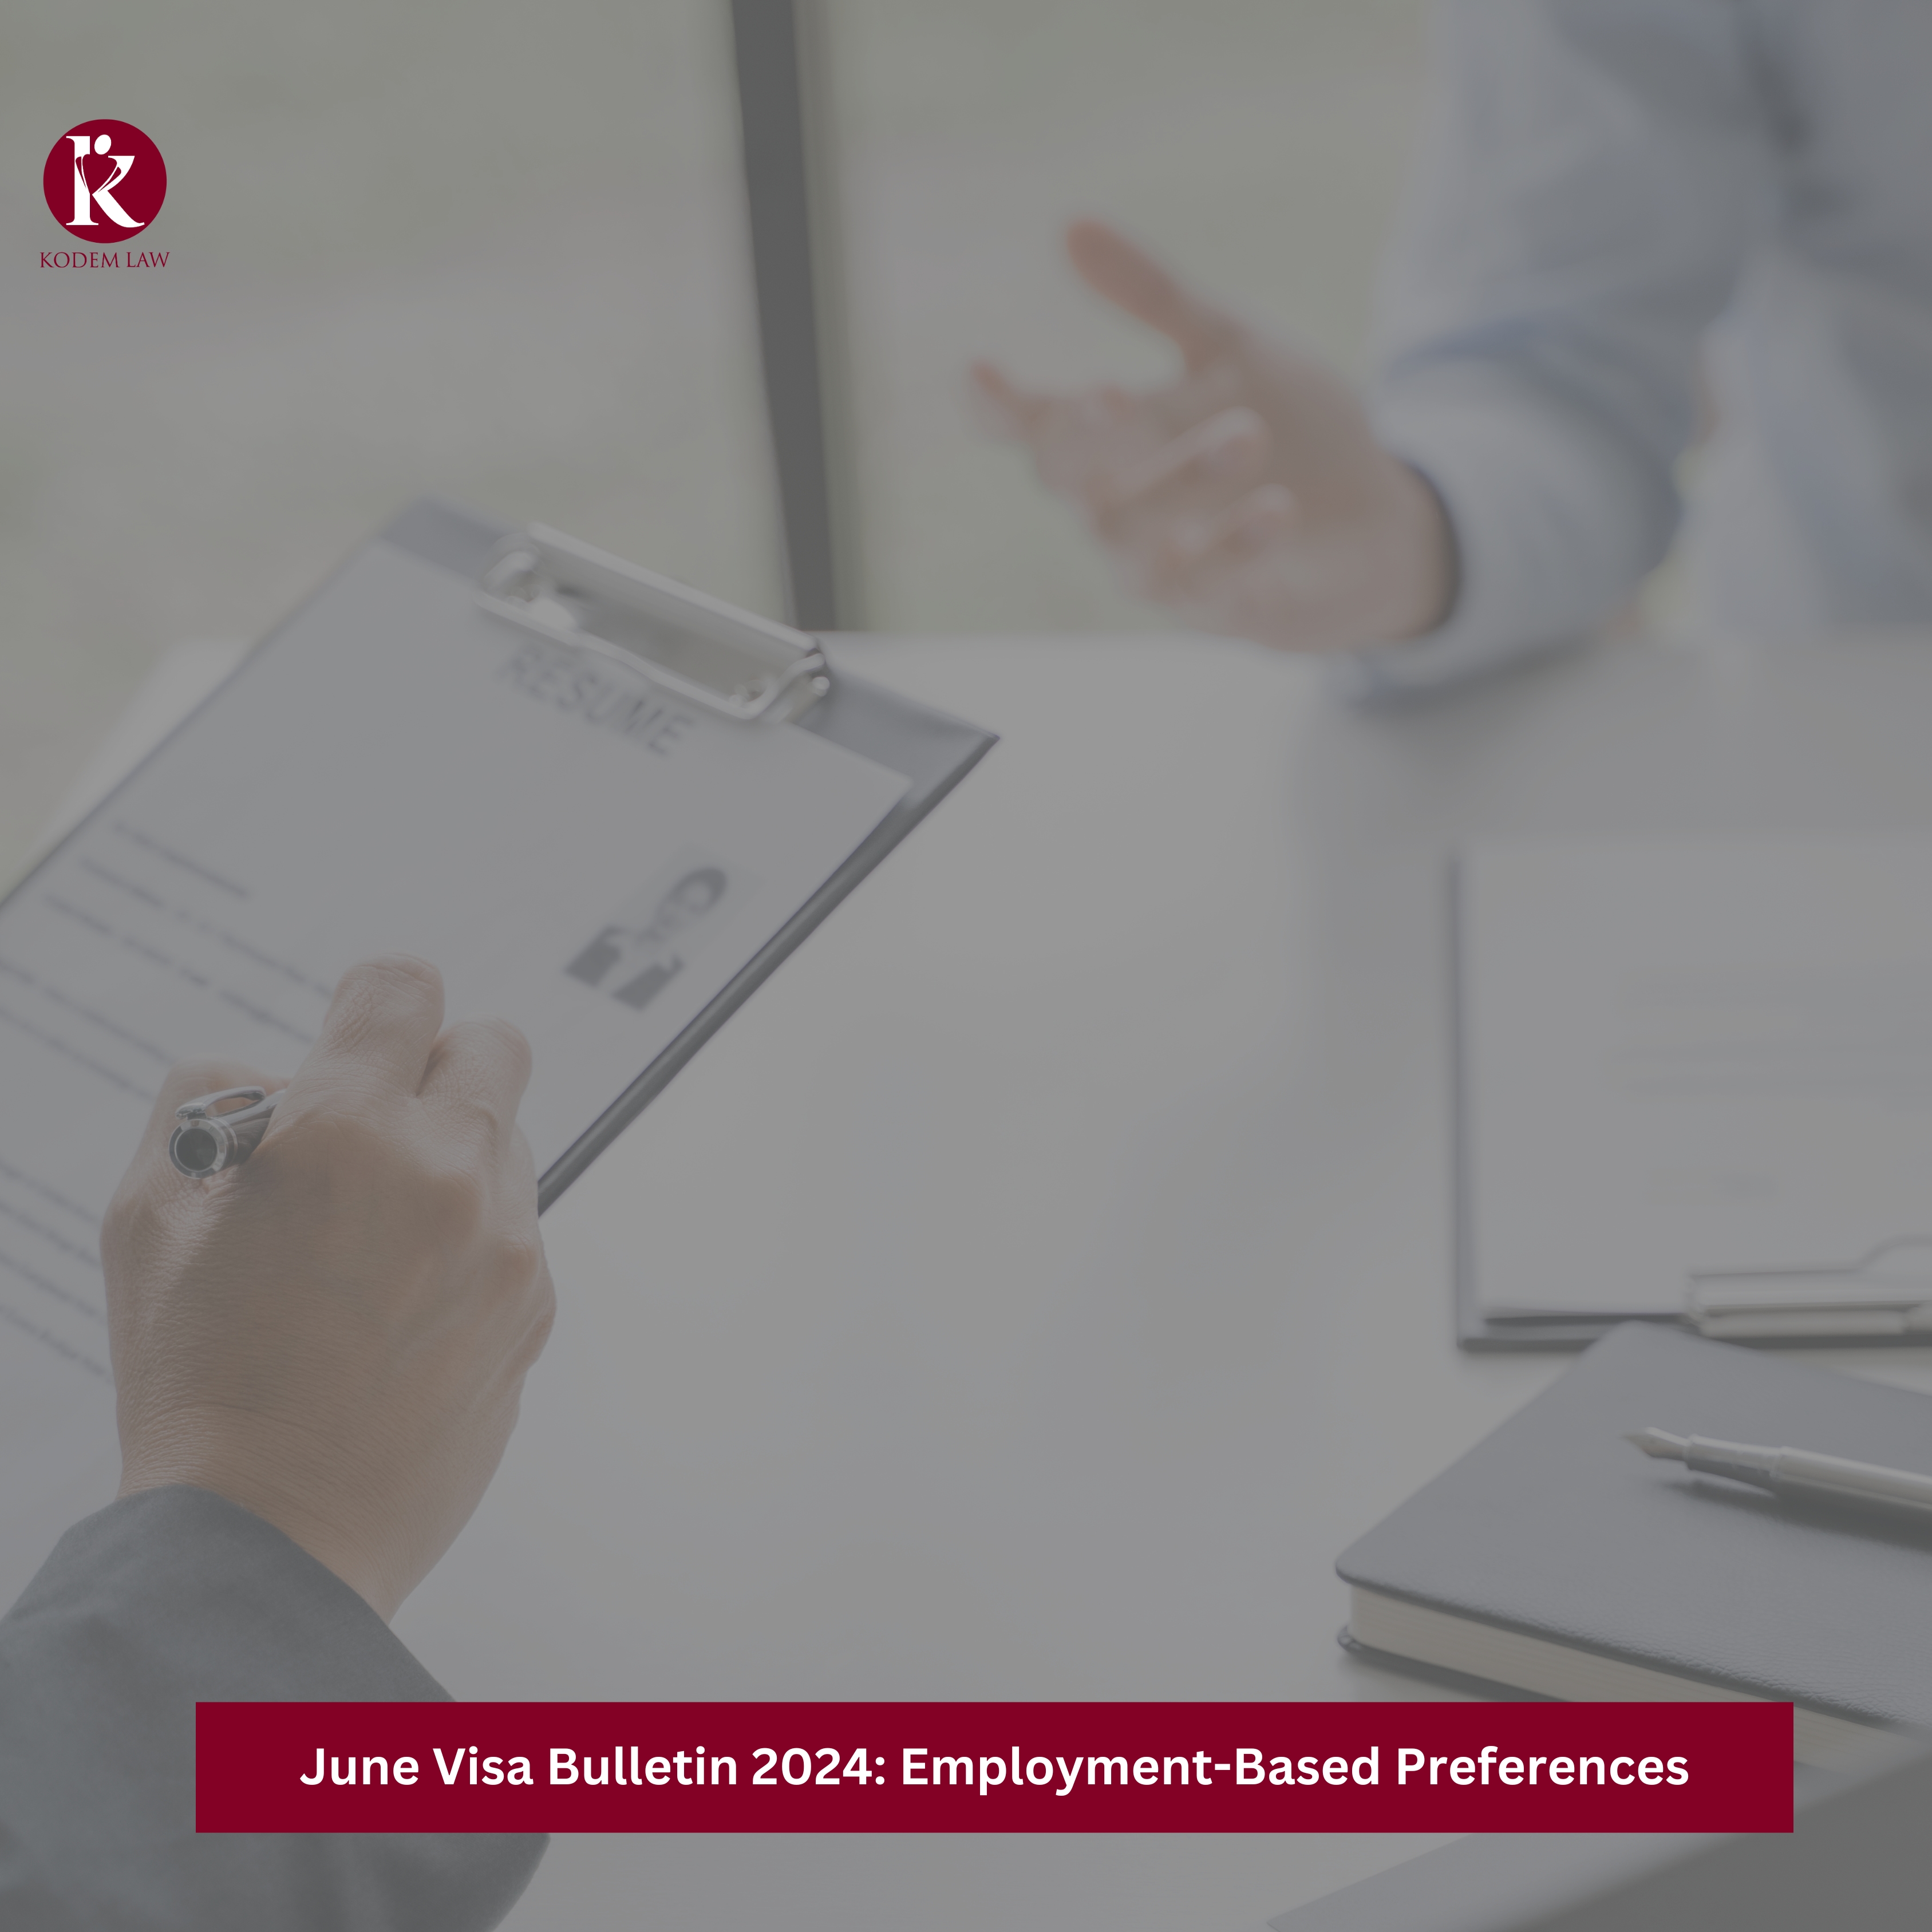 June Visa Bulletin 2024 Employment-Based Preferences